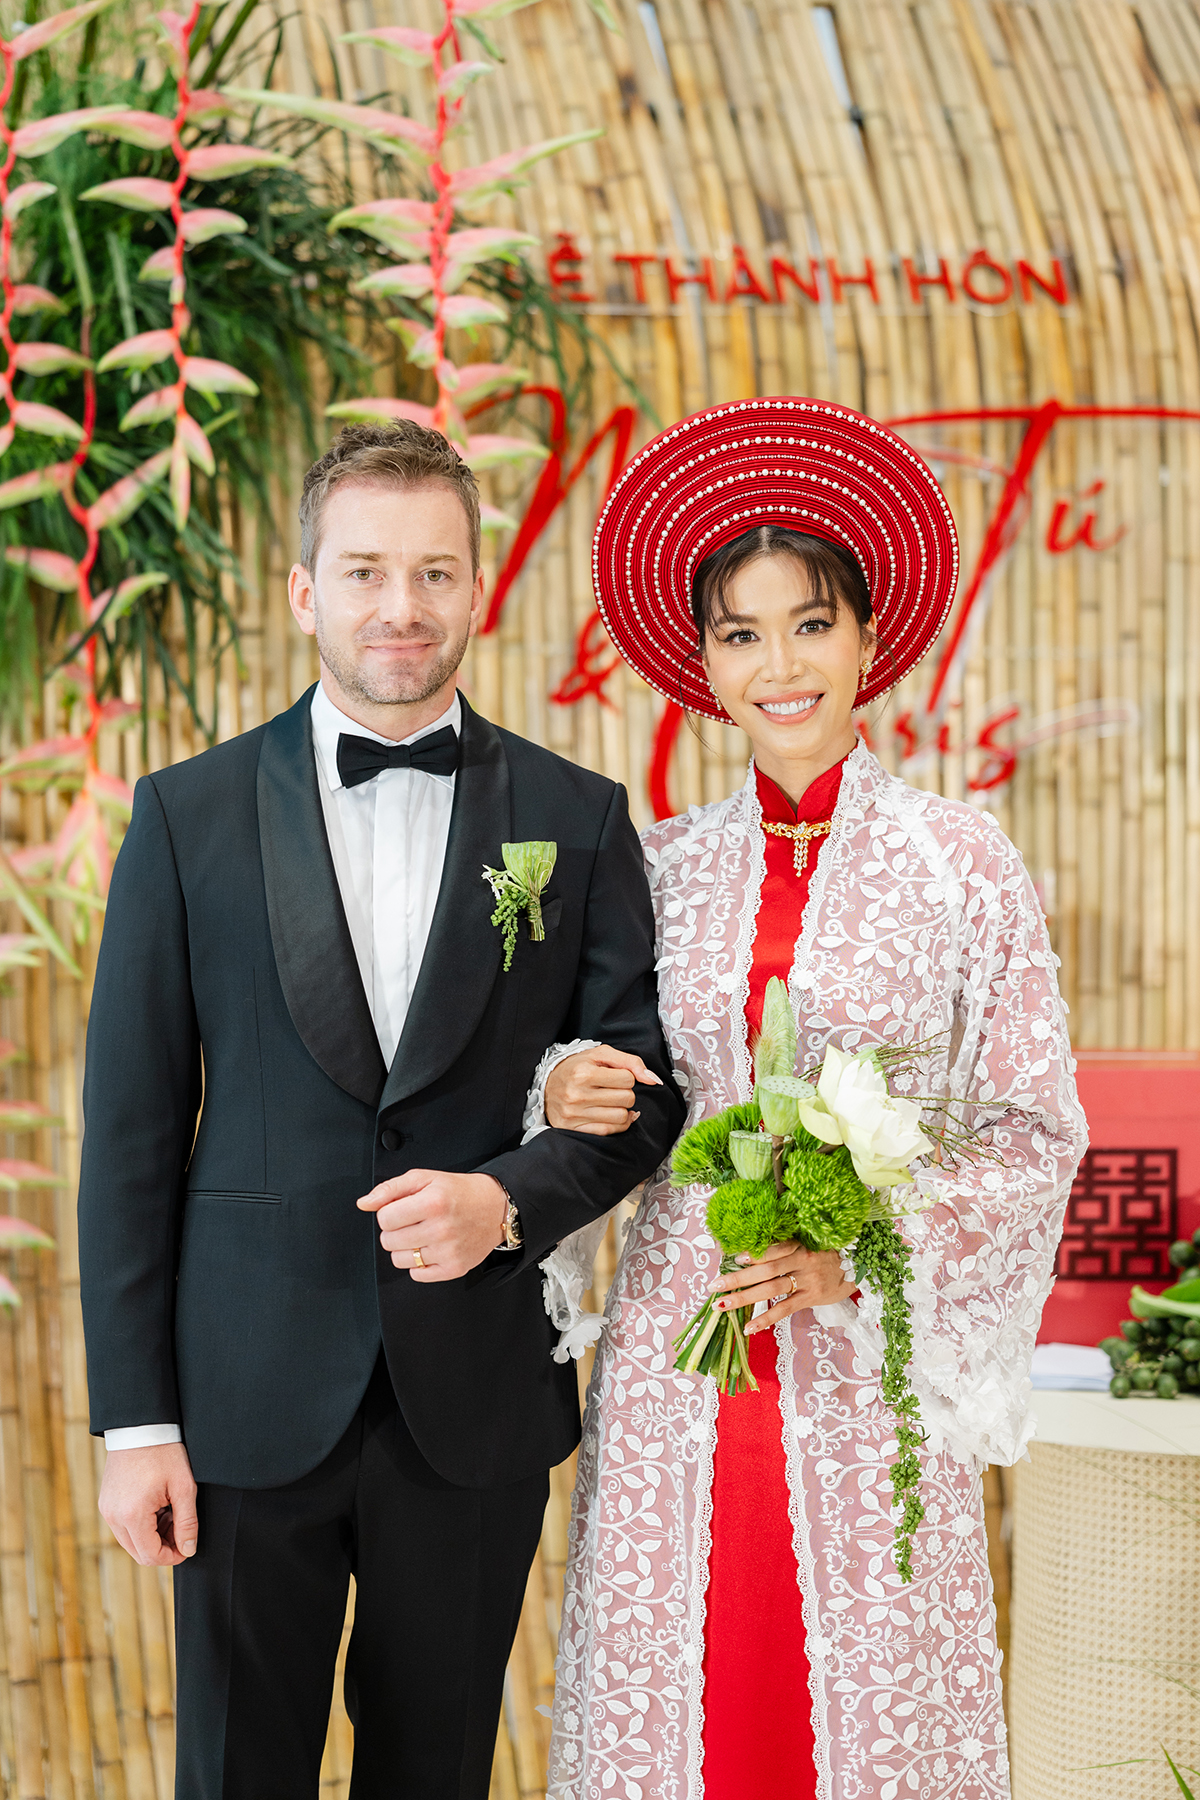 Trấn Thành giải thích lý do không dự đám cưới Minh Tú - ảnh 1